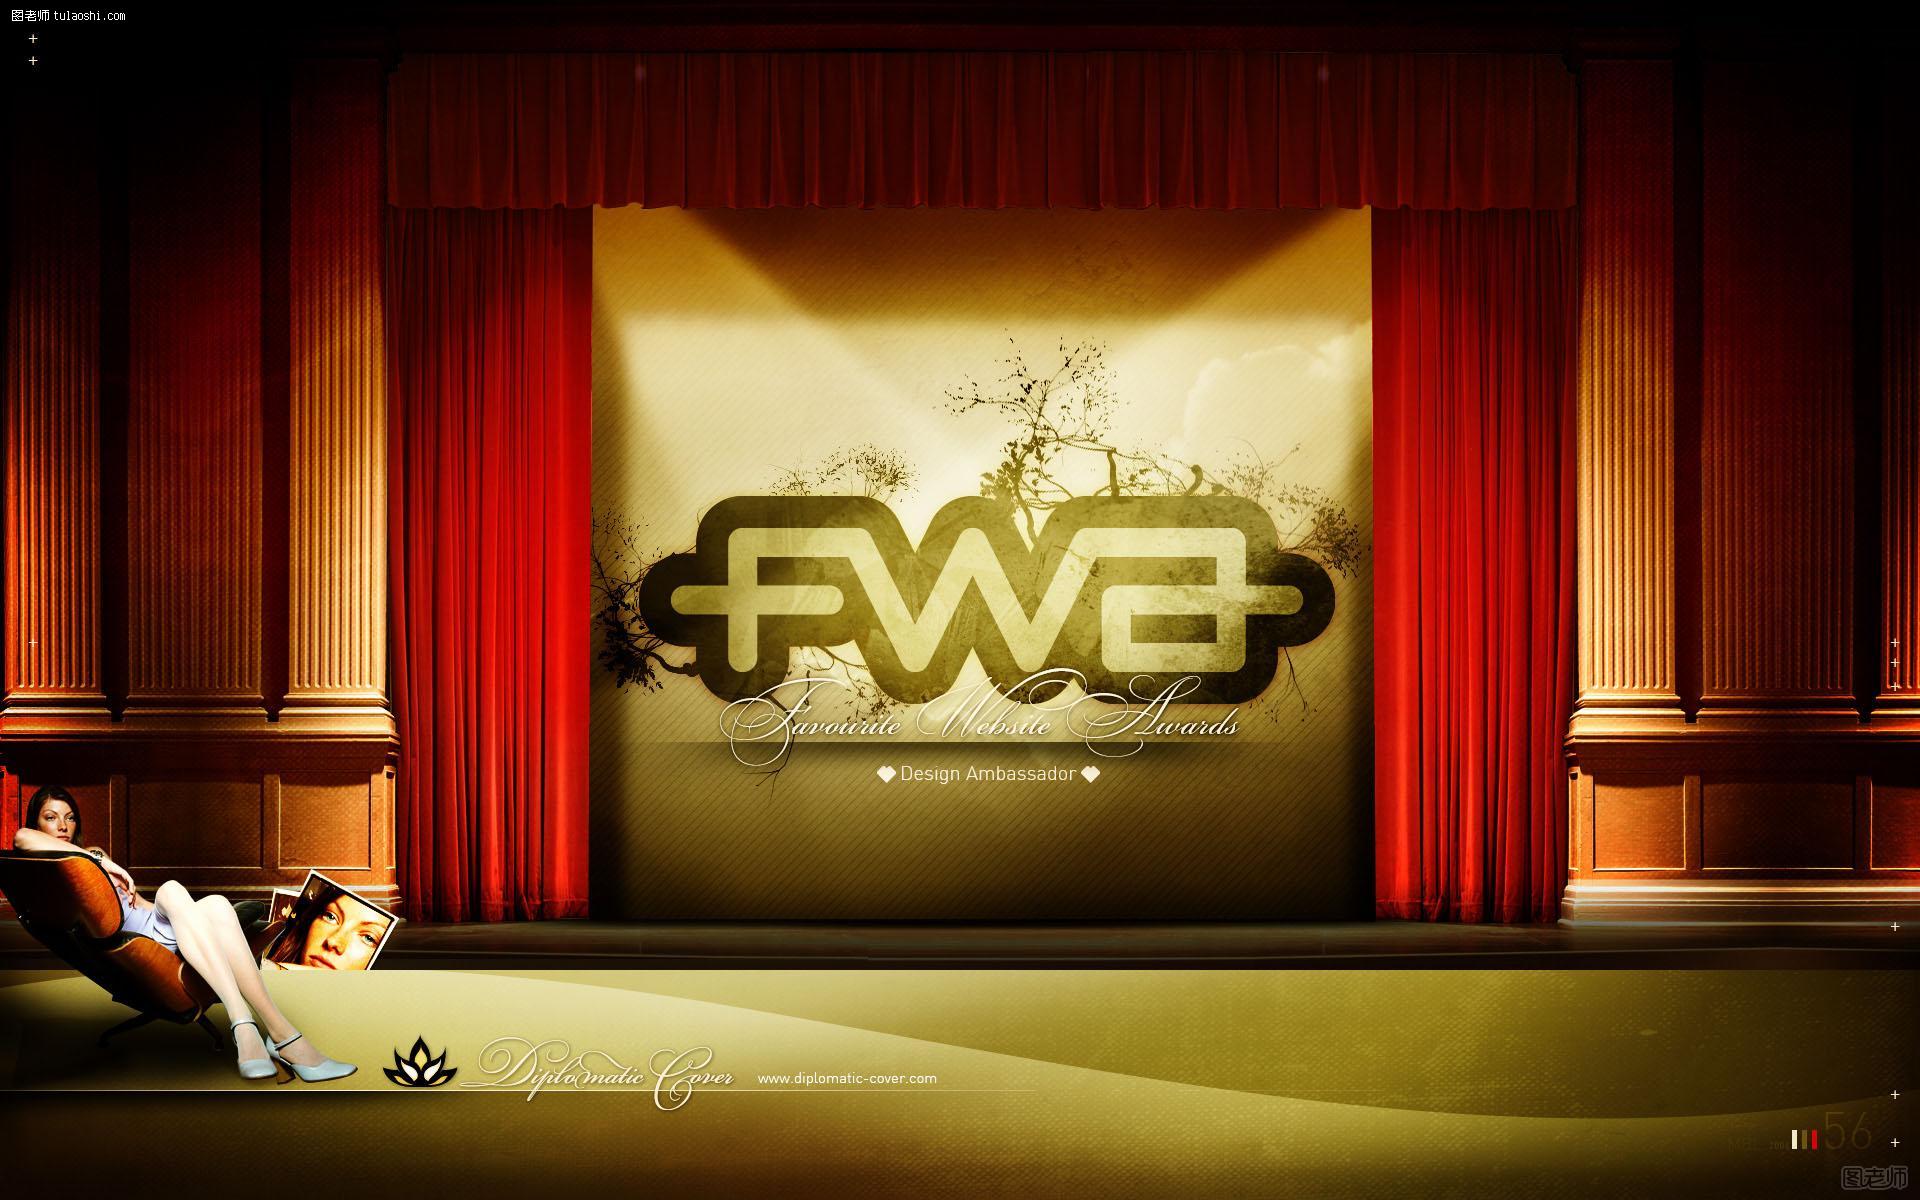 FWA高清宽屏创意设计壁纸(Favourite Website Awards)